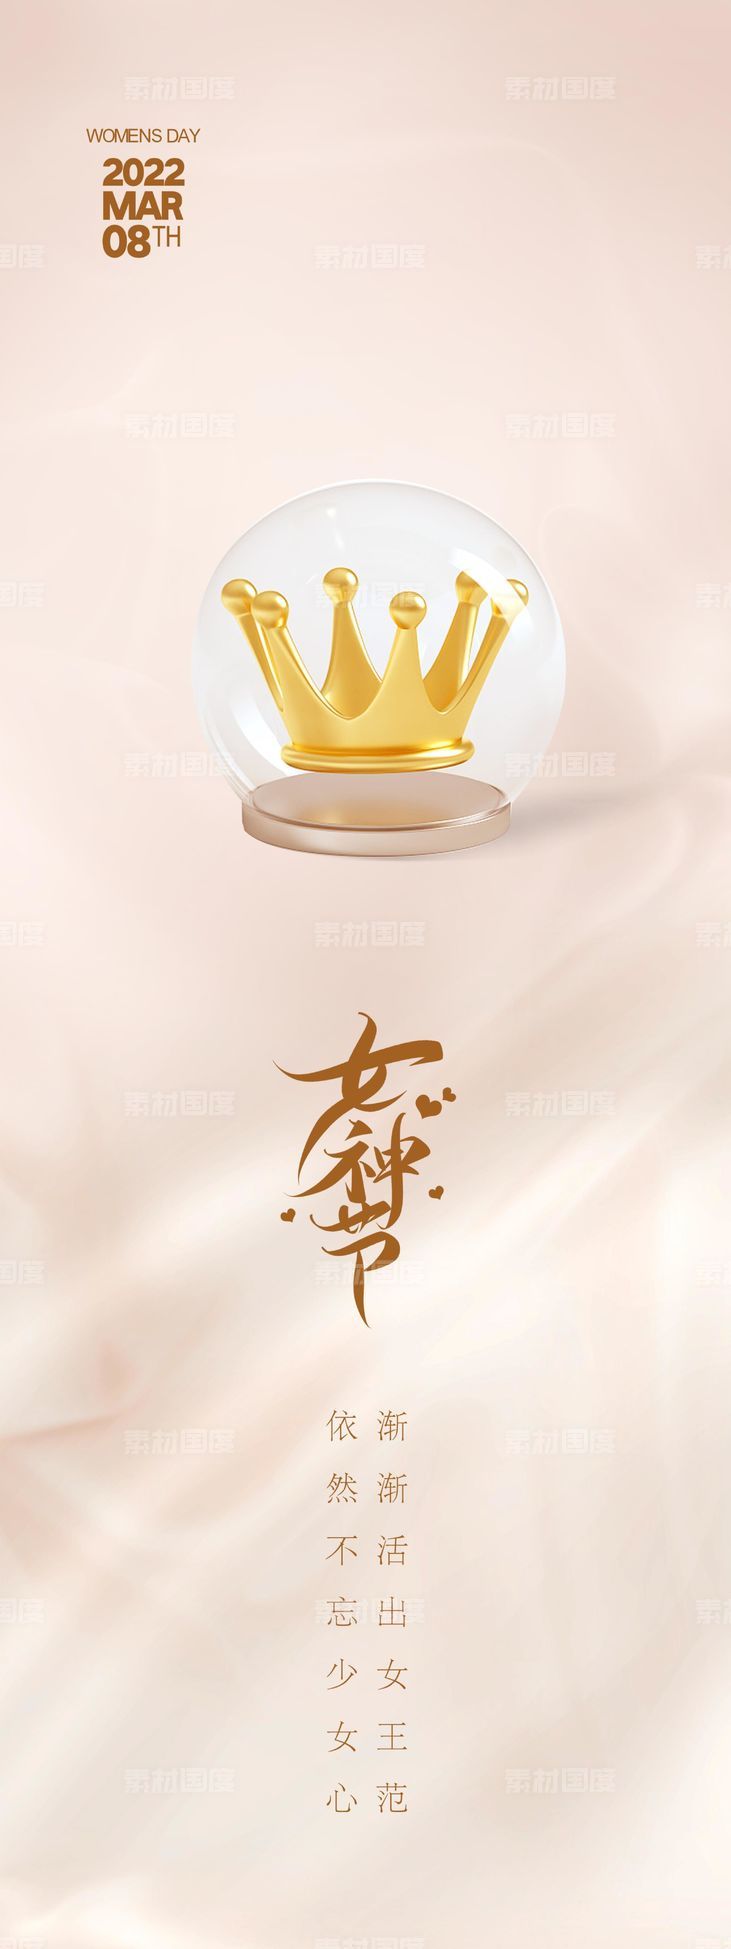 38 女王节 女神节 简约 大气 地产海报 房产